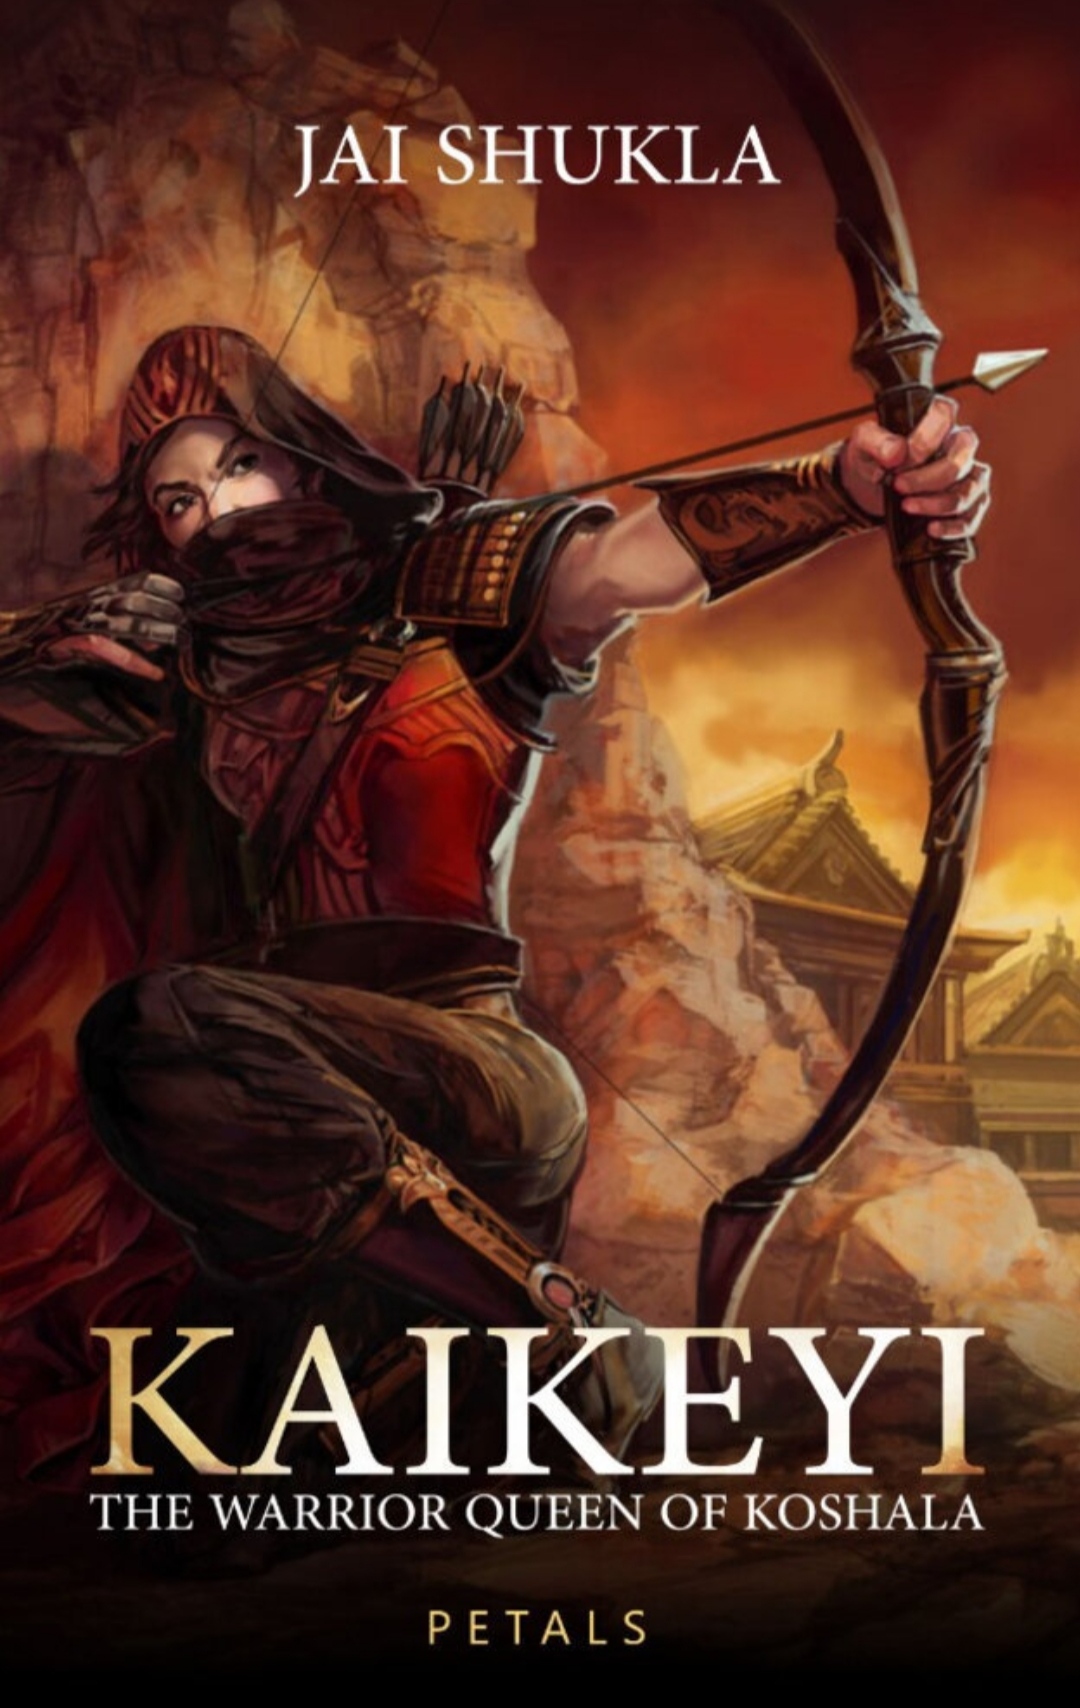 kaikeyi a novel book review